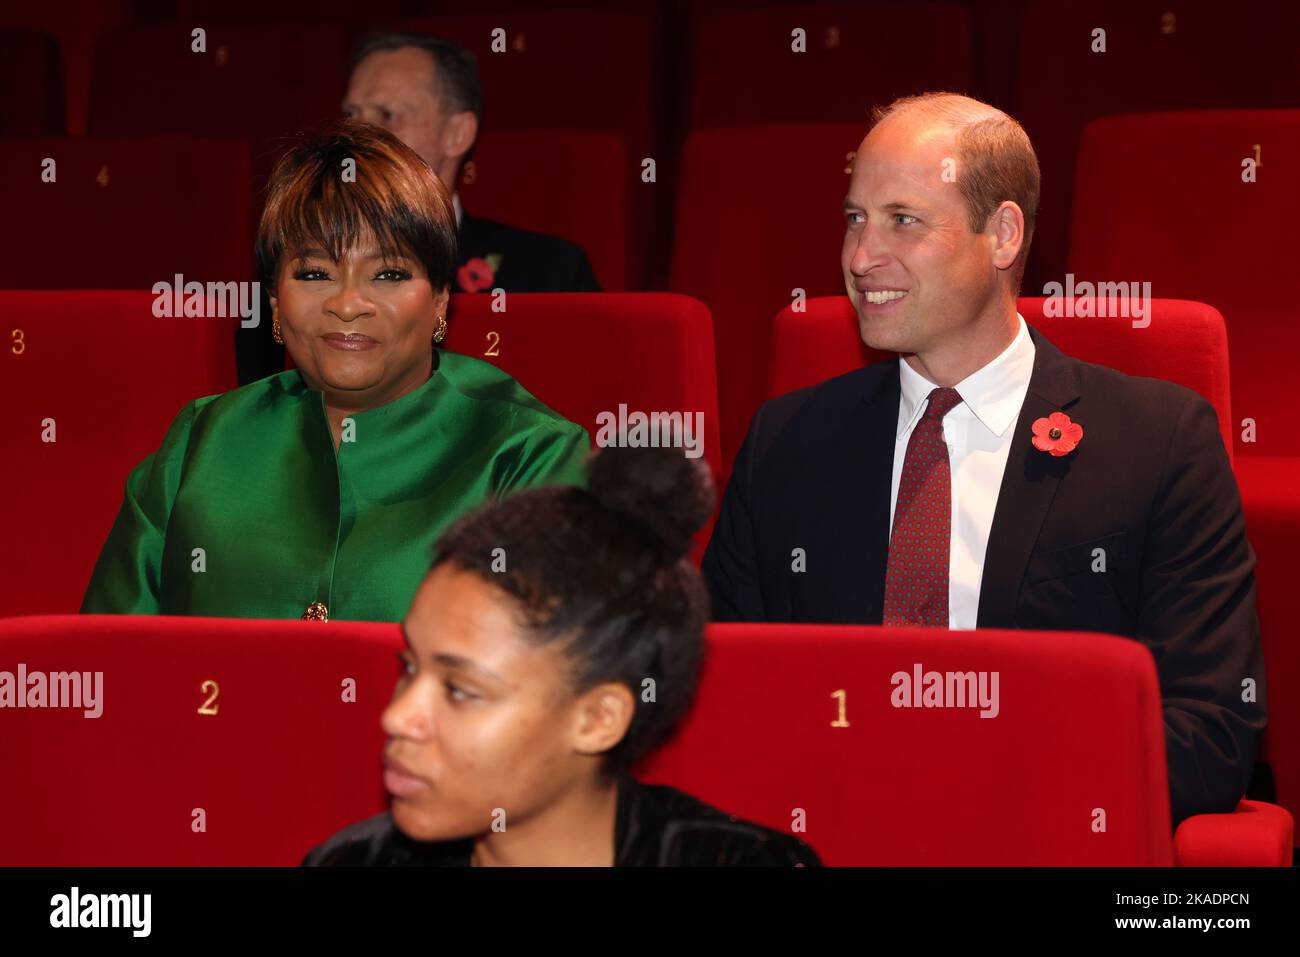 Le Prince de Galles et Arunma Oteh (à gauche), président de la Royal African Society, participent à un événement dans le cadre du festival biennal du film de la Royal Africa Society, film Africa, au Garden Cinema, Londres. Date de la photo: Mercredi 2 novembre 2022. Banque D'Images